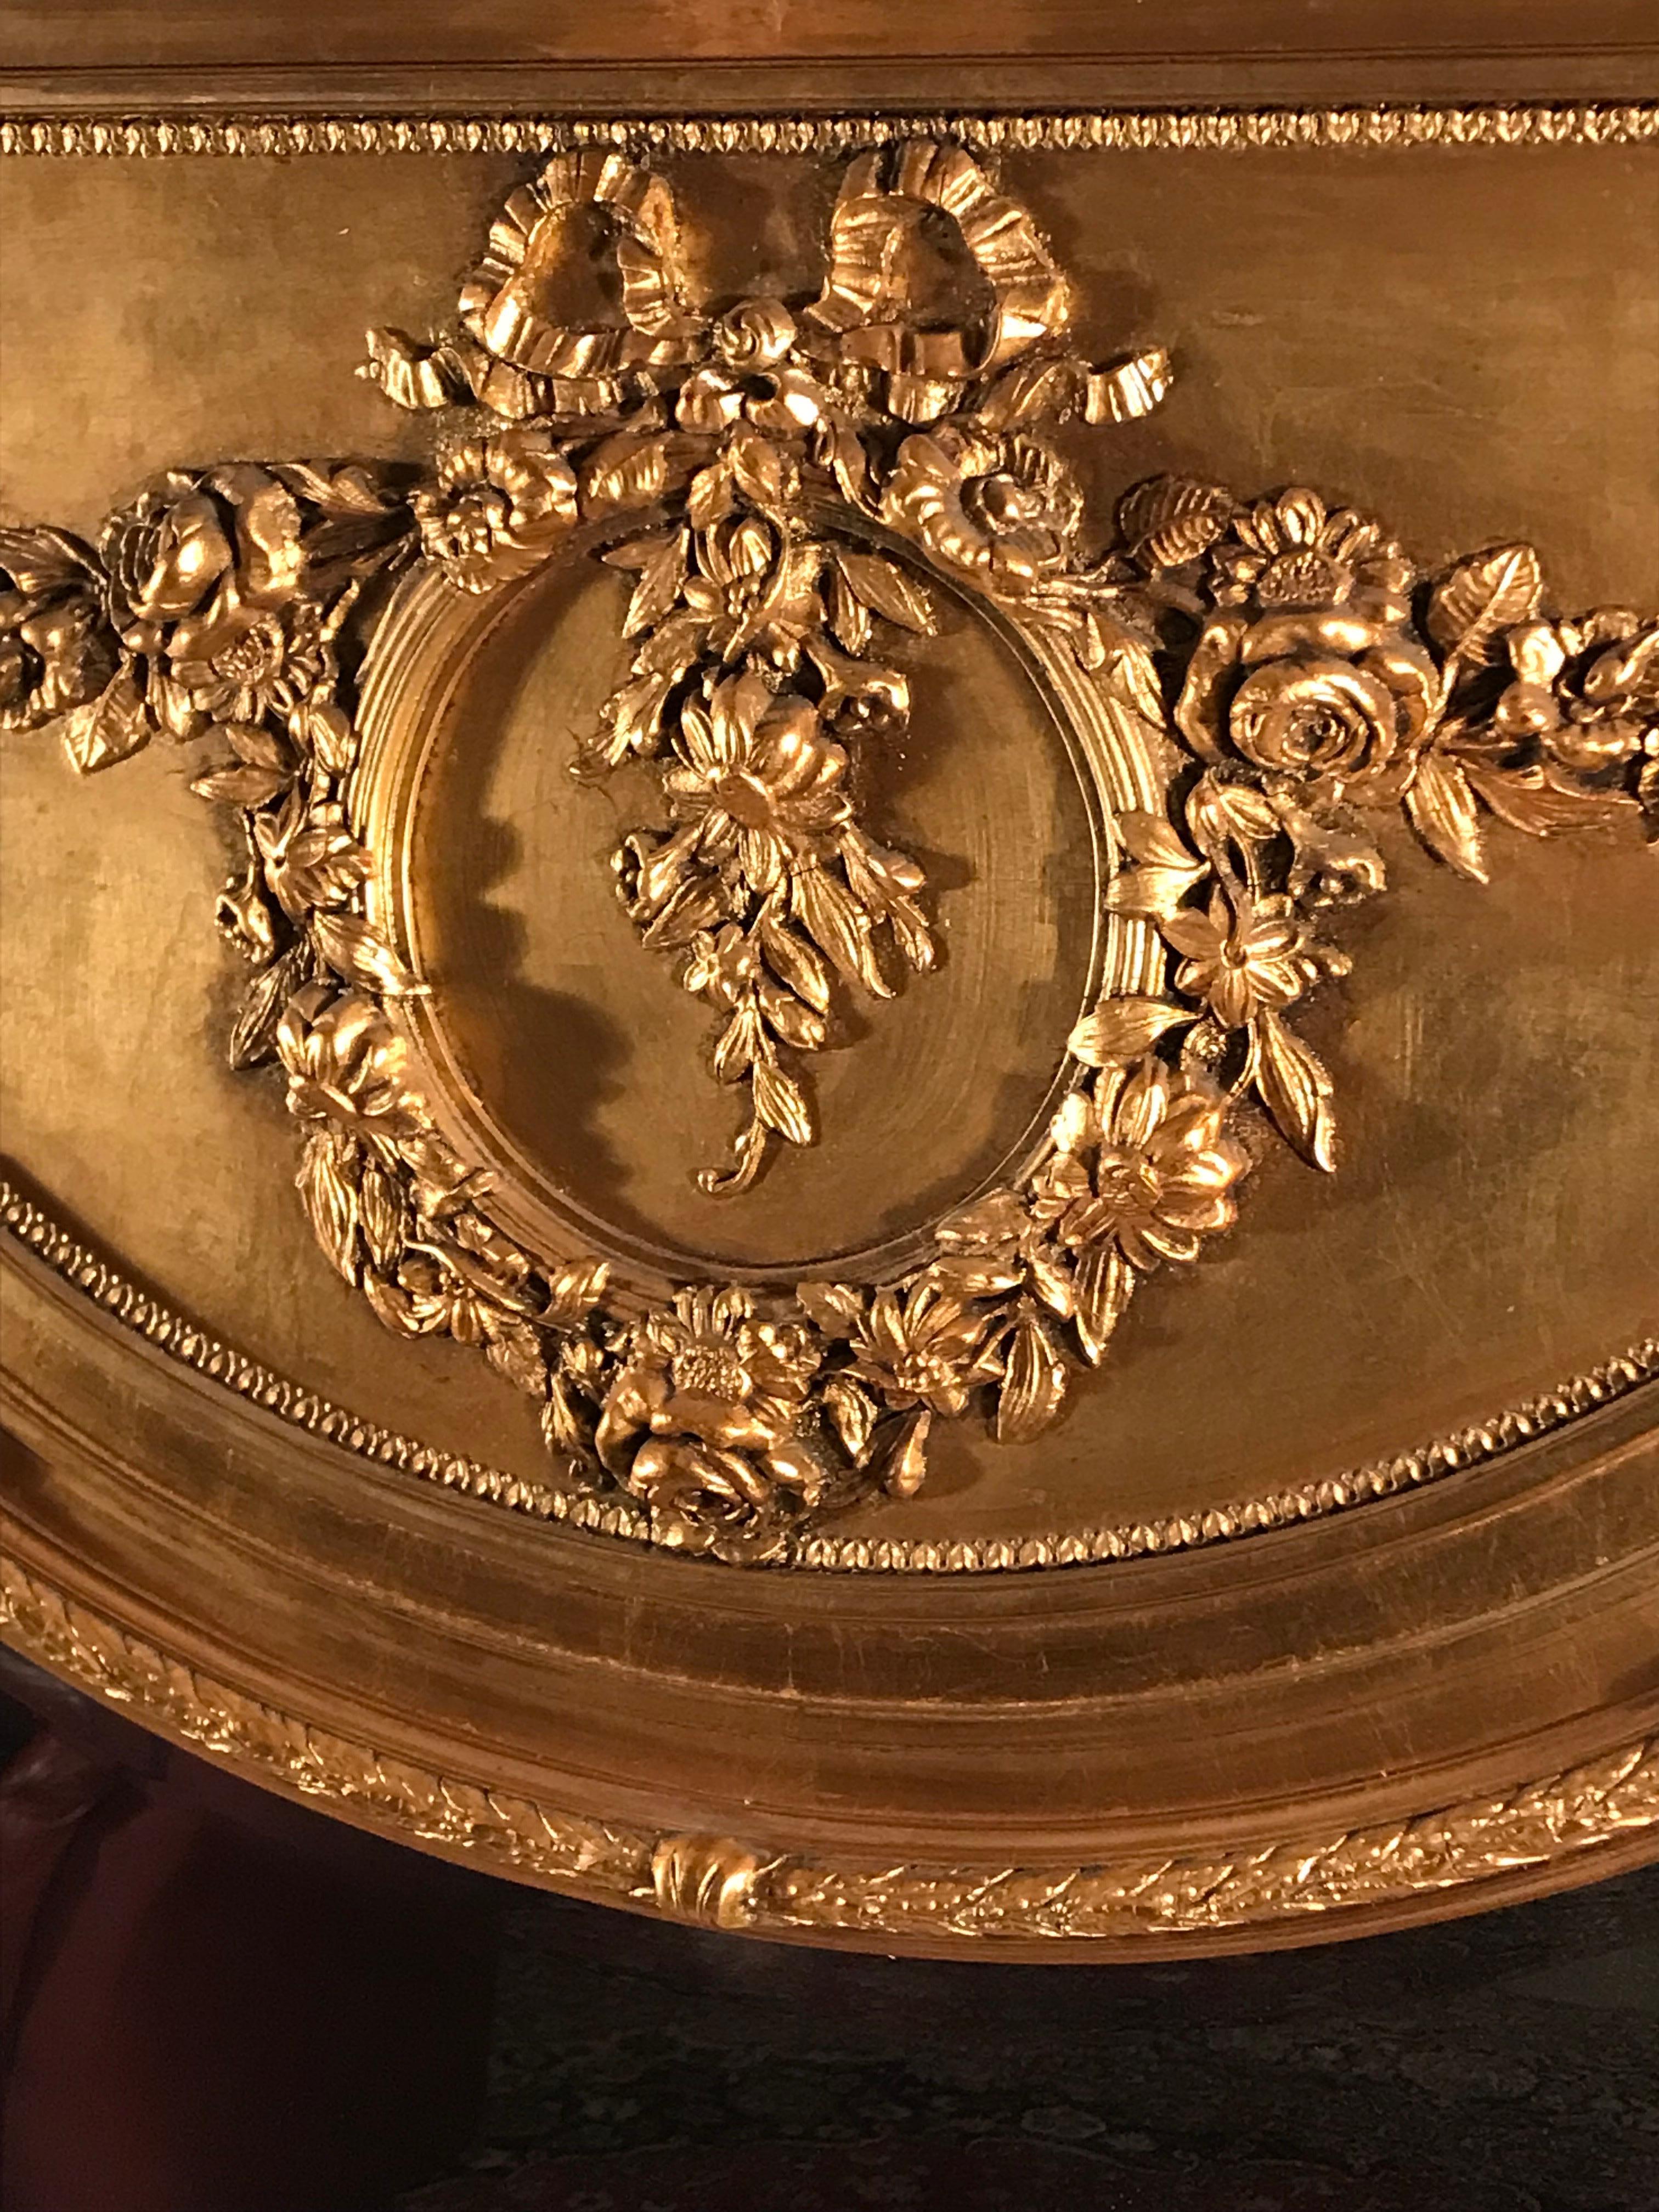 Dieser beeindruckende Trumeau-Spiegel im Louis XVI-Stil zeichnet sich durch sein schönes Blumen- und Blätterdekor aus. Der obere Teil ist mit einer prächtigen Blumen-/Rosengirlande und einem zentralen Medaillon versehen. Der vergoldete Holzspiegel